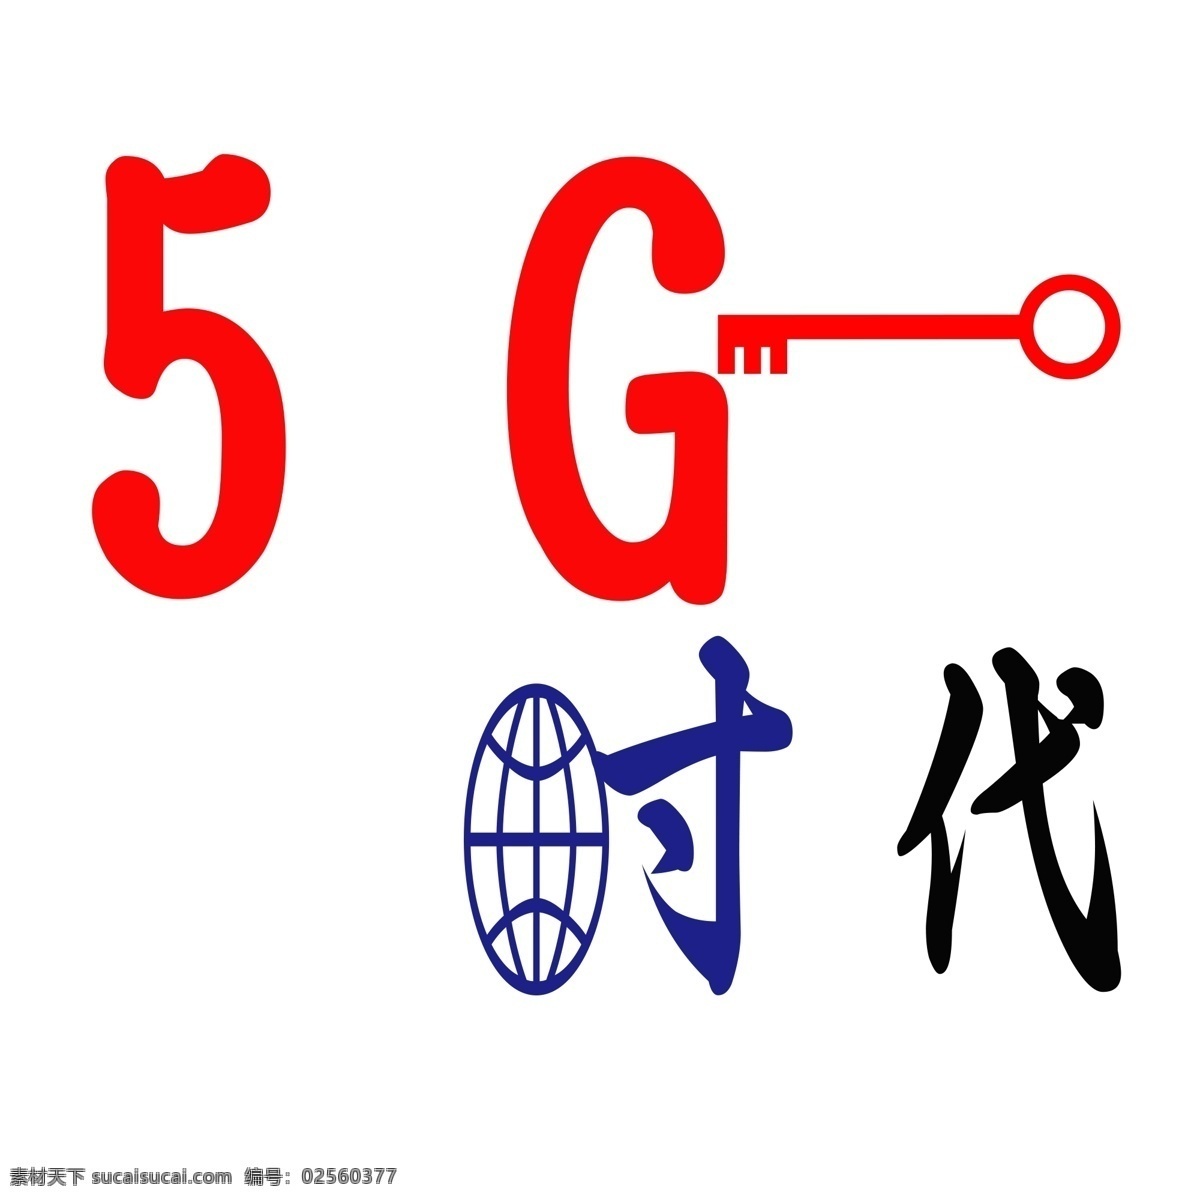 5g 时代 艺术 字 5g网络 钥匙 开启 红色 蓝色 黑色 字体 喜迎 来临 全球 共享